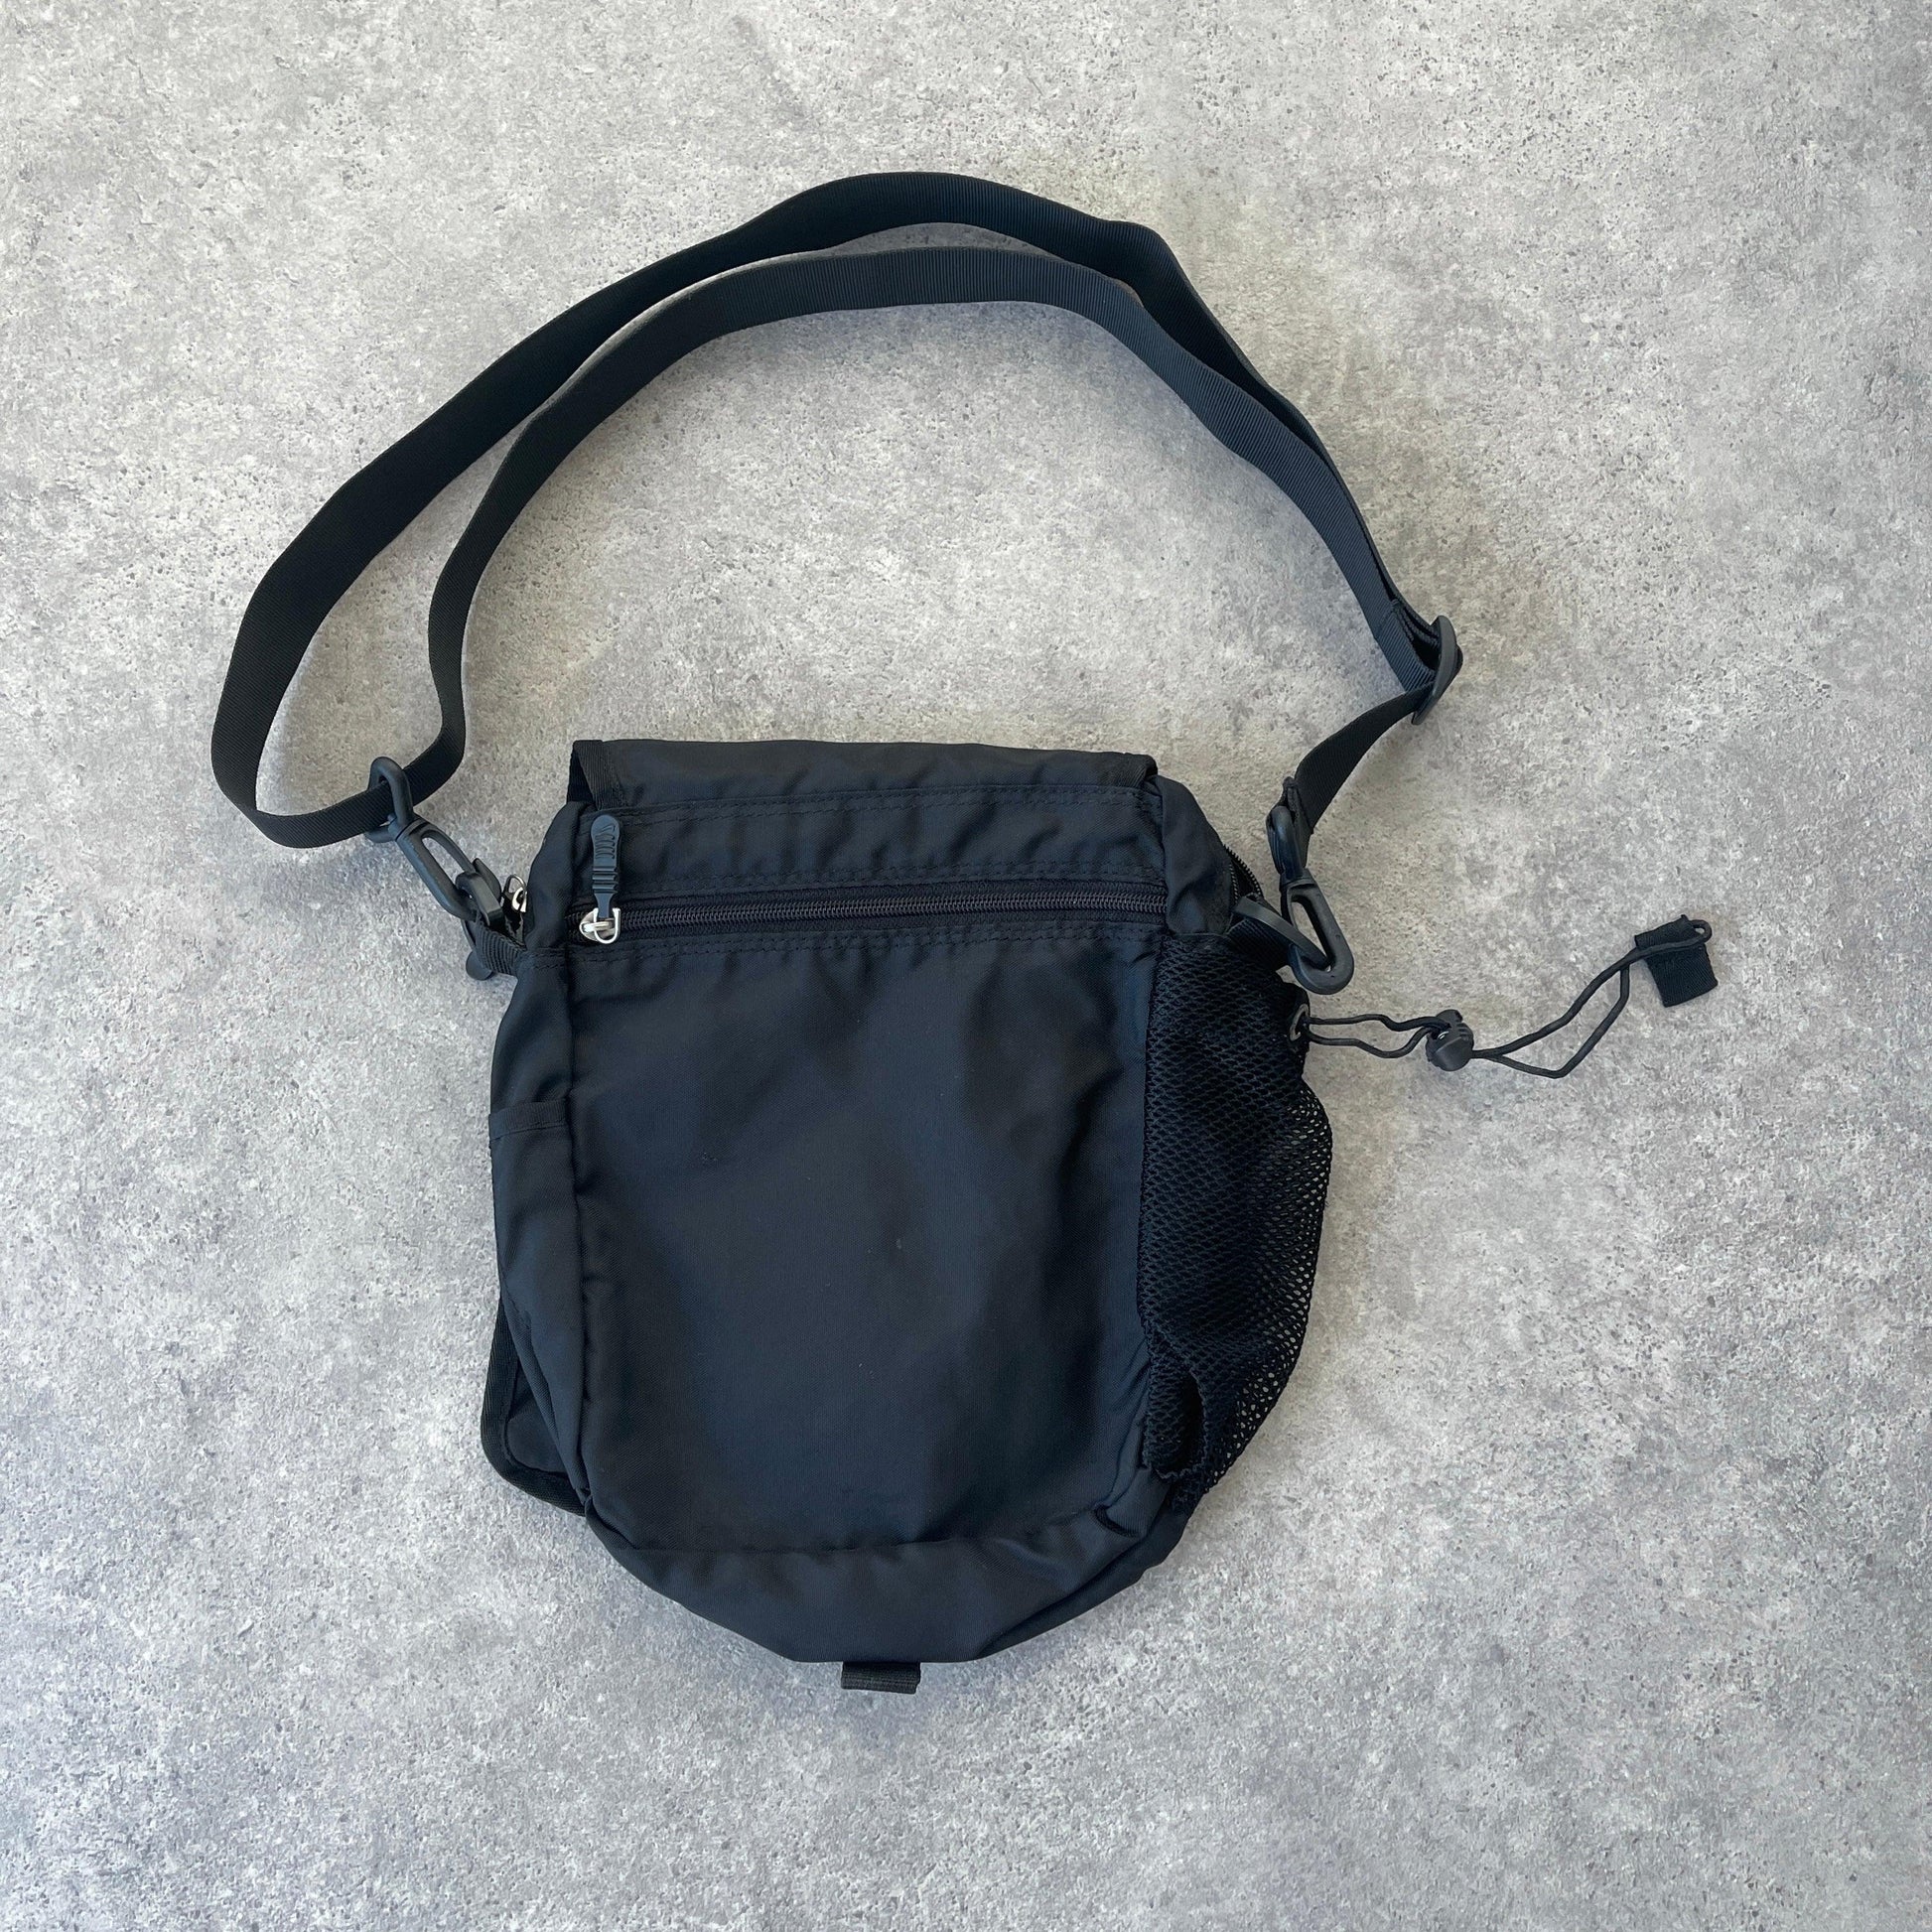 Nike 1990s cross body utility bag (11”x10”x5”) - Known Source